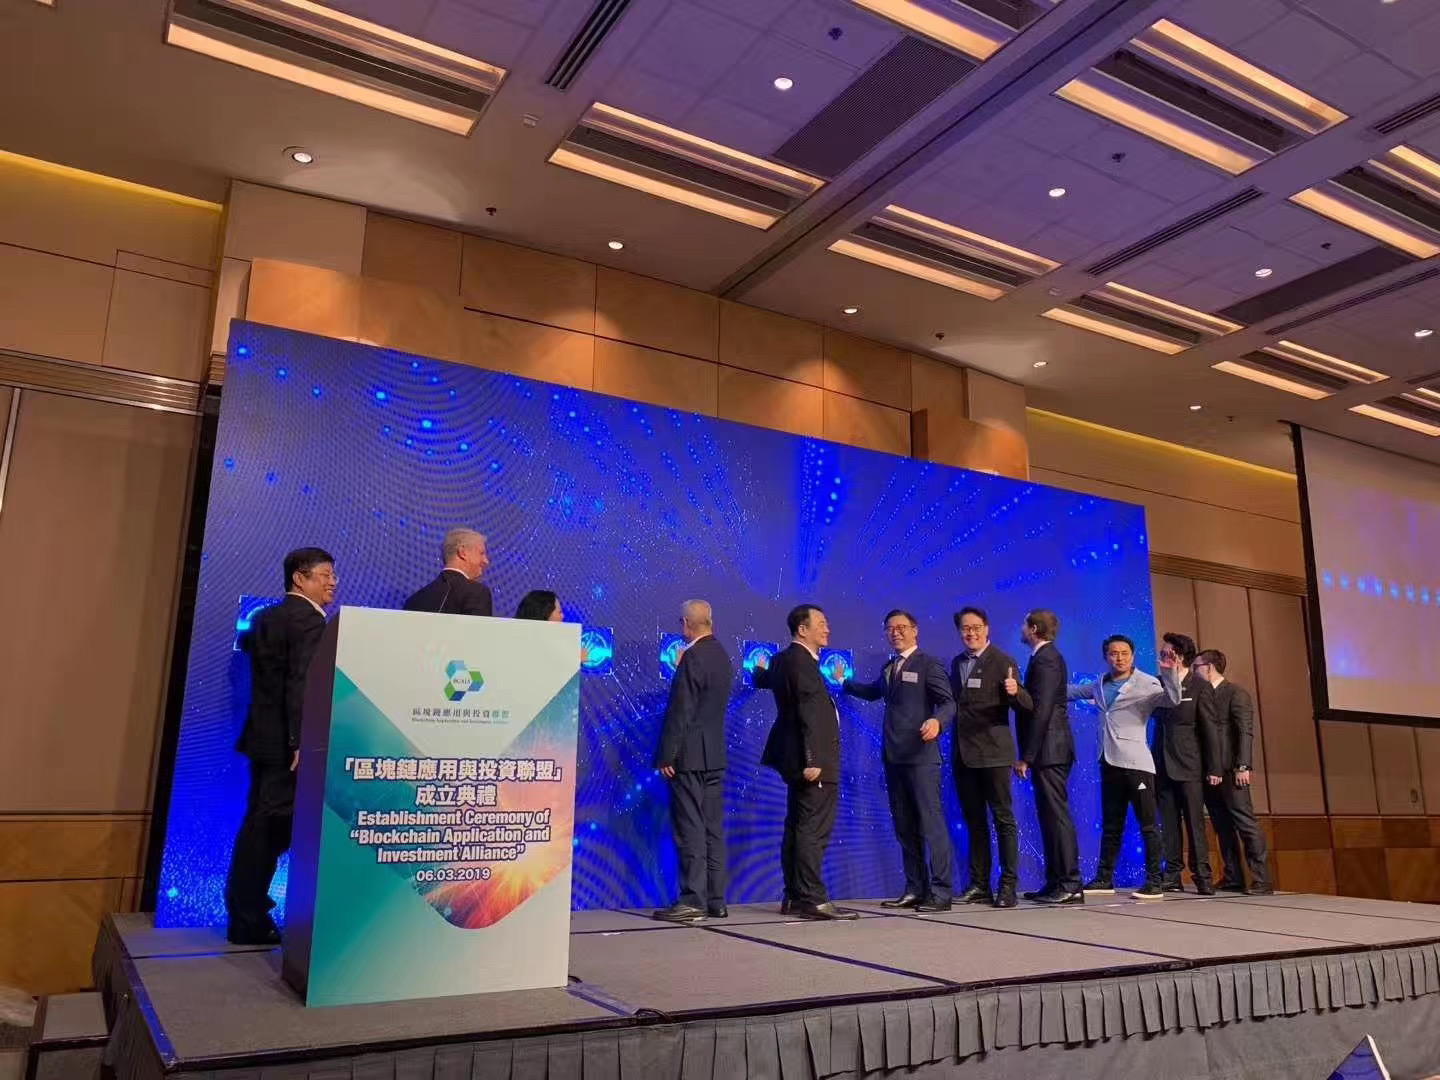 2019年3月6日邦盟匯駿集團“區塊鏈應用及投資聯盟”在香港會展中心啟動成立